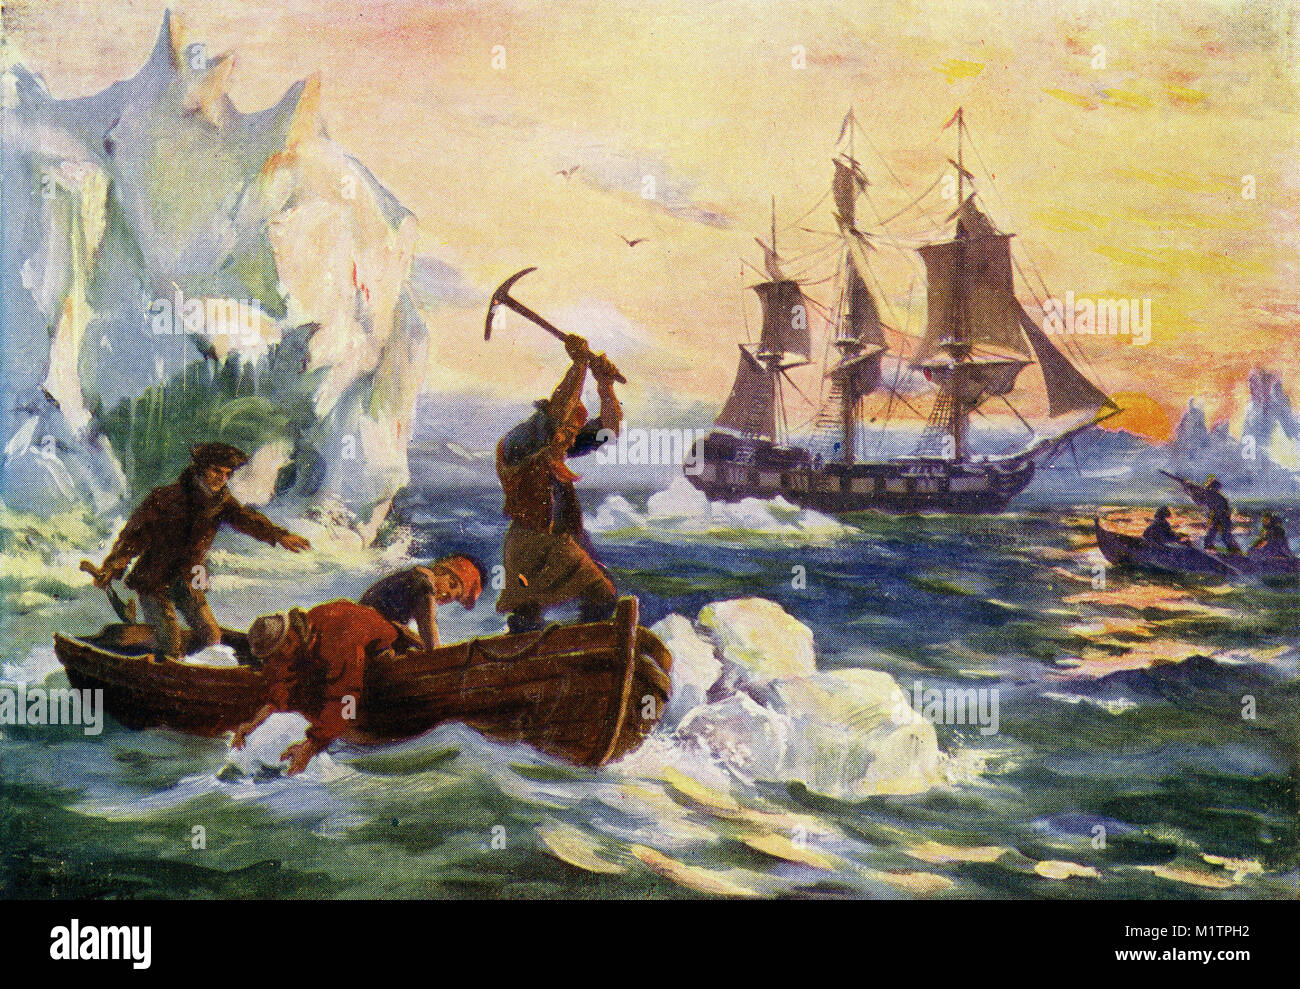 Illustration de demi-teinte de la collecte d'explorateurs de l'Arctique à fondre les icebergs pour l'eau douce, tandis que d'autres oiseaux de la tige pour l'alimentation, vers 1900. À partir d'une image d'origine dans la façon dont les autres vivent par H. Clive Barnard, 1918. Banque D'Images